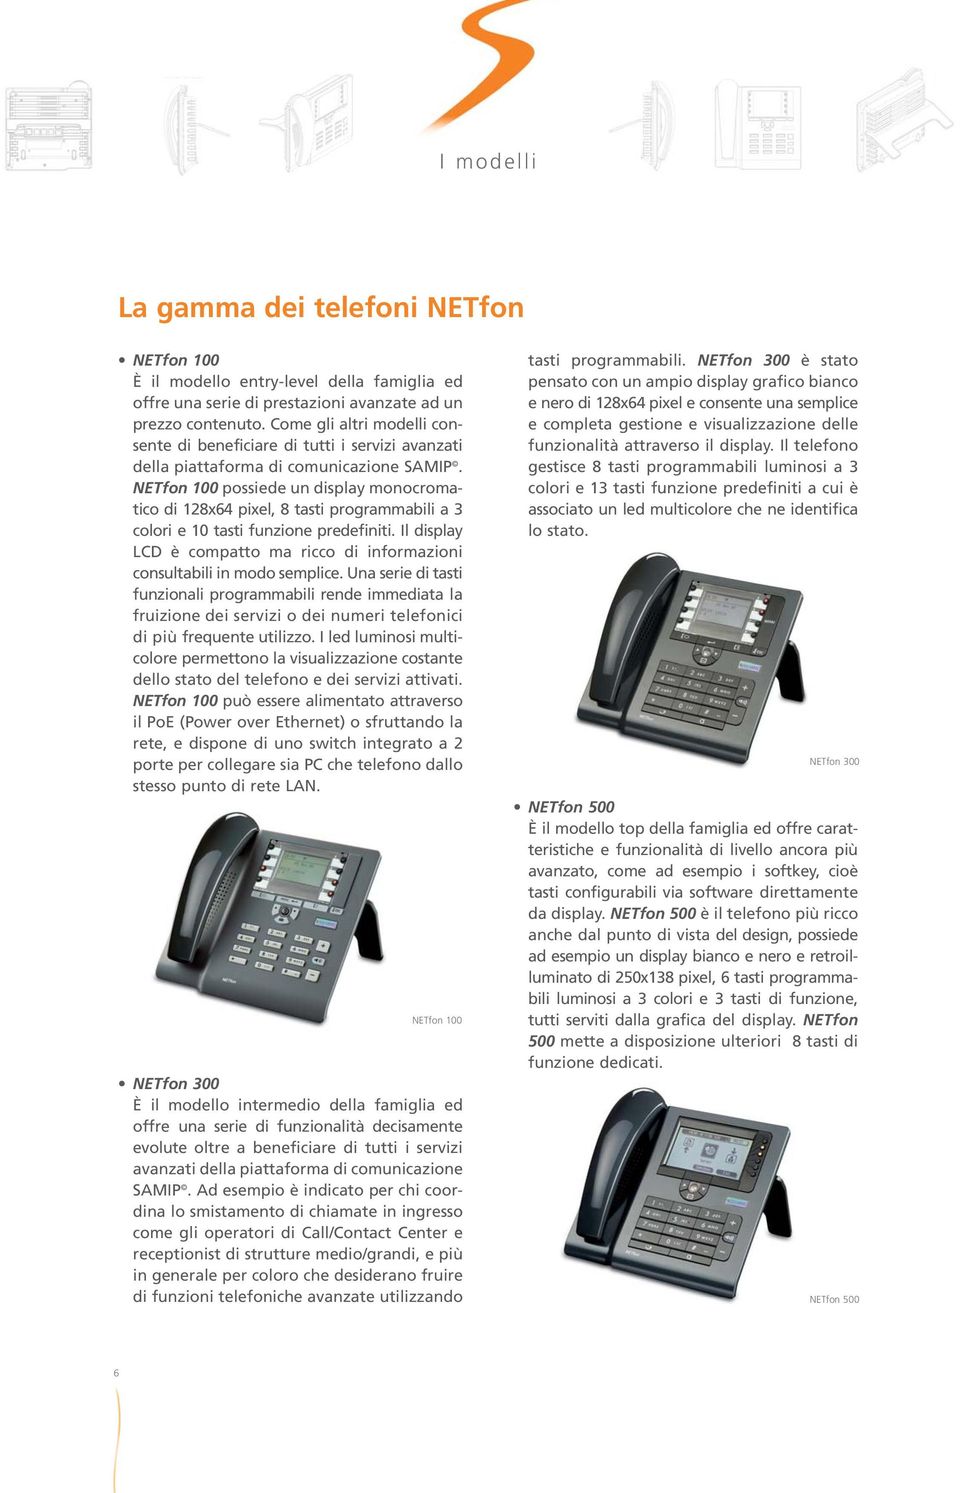 NETfon 100 possiede un display monocromatico di 128x64 pixel, 8 tasti programmabili a 3 colori e 10 tasti funzione predefiniti.